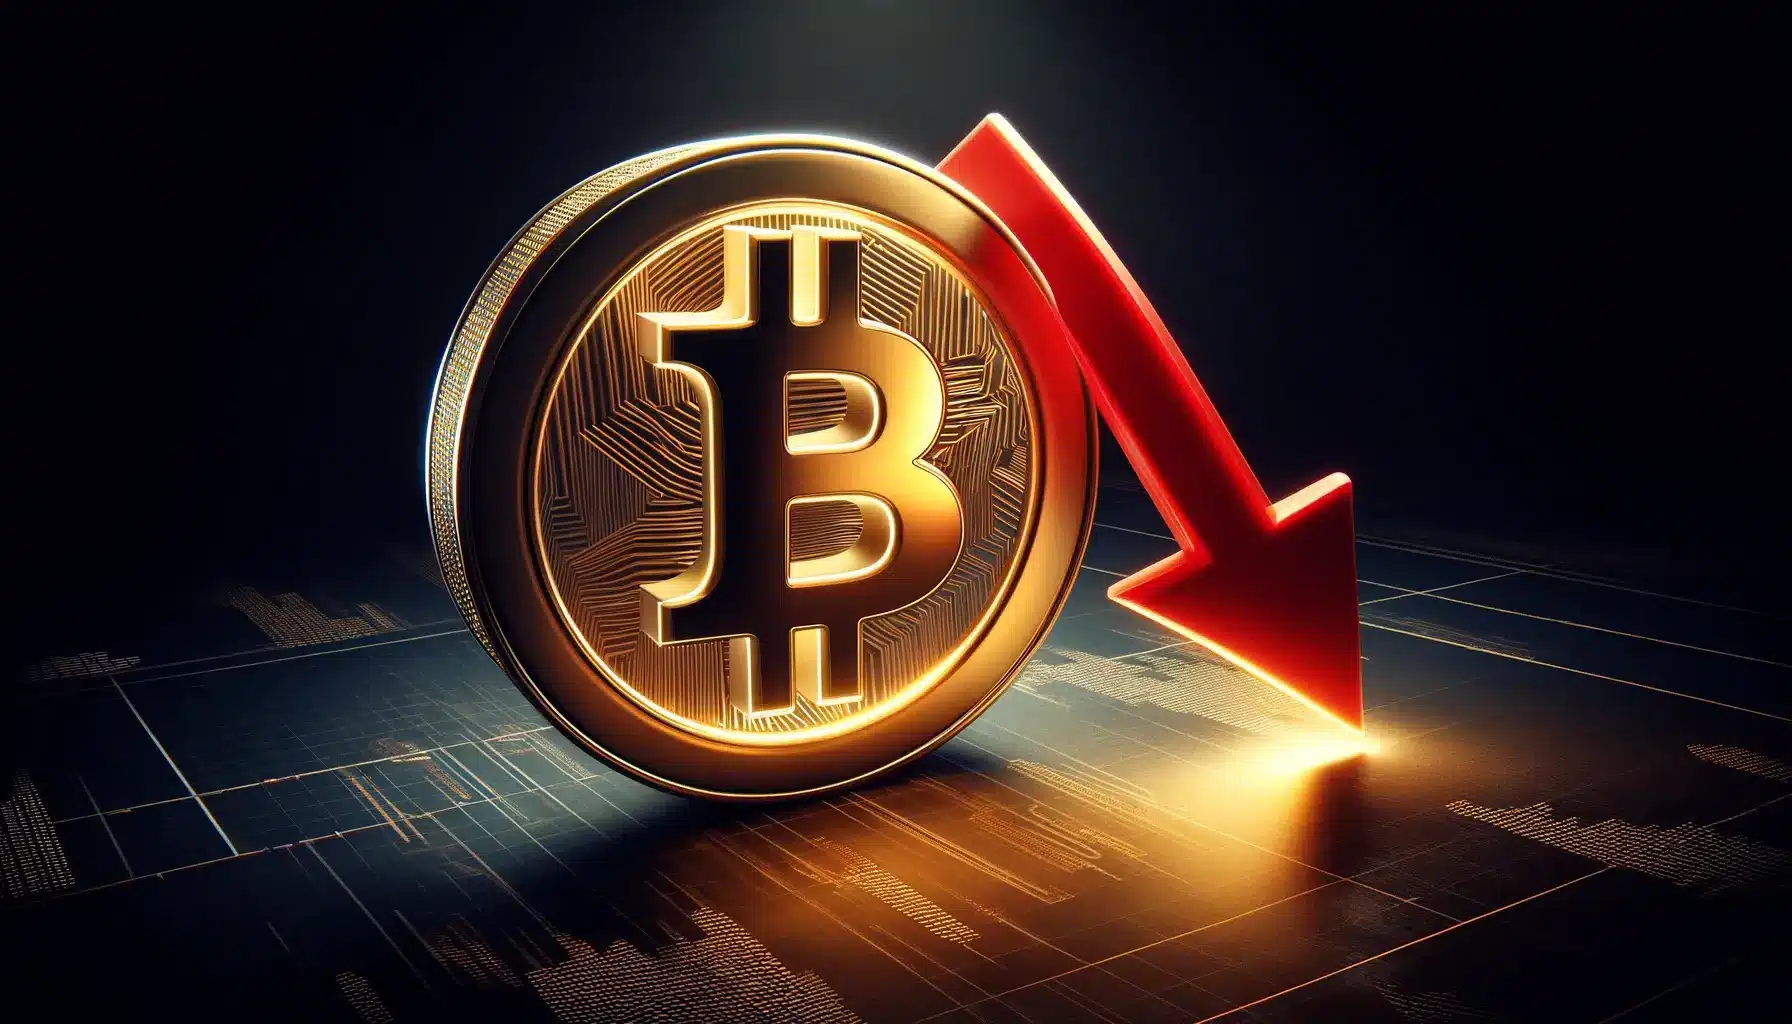 ราคา Bitcoin ลดลงต่ำกว่า $66,000 ก่อน Bitcoin Halving ที่จะเกิดขึ้นในอีก 2 สัปดาห์